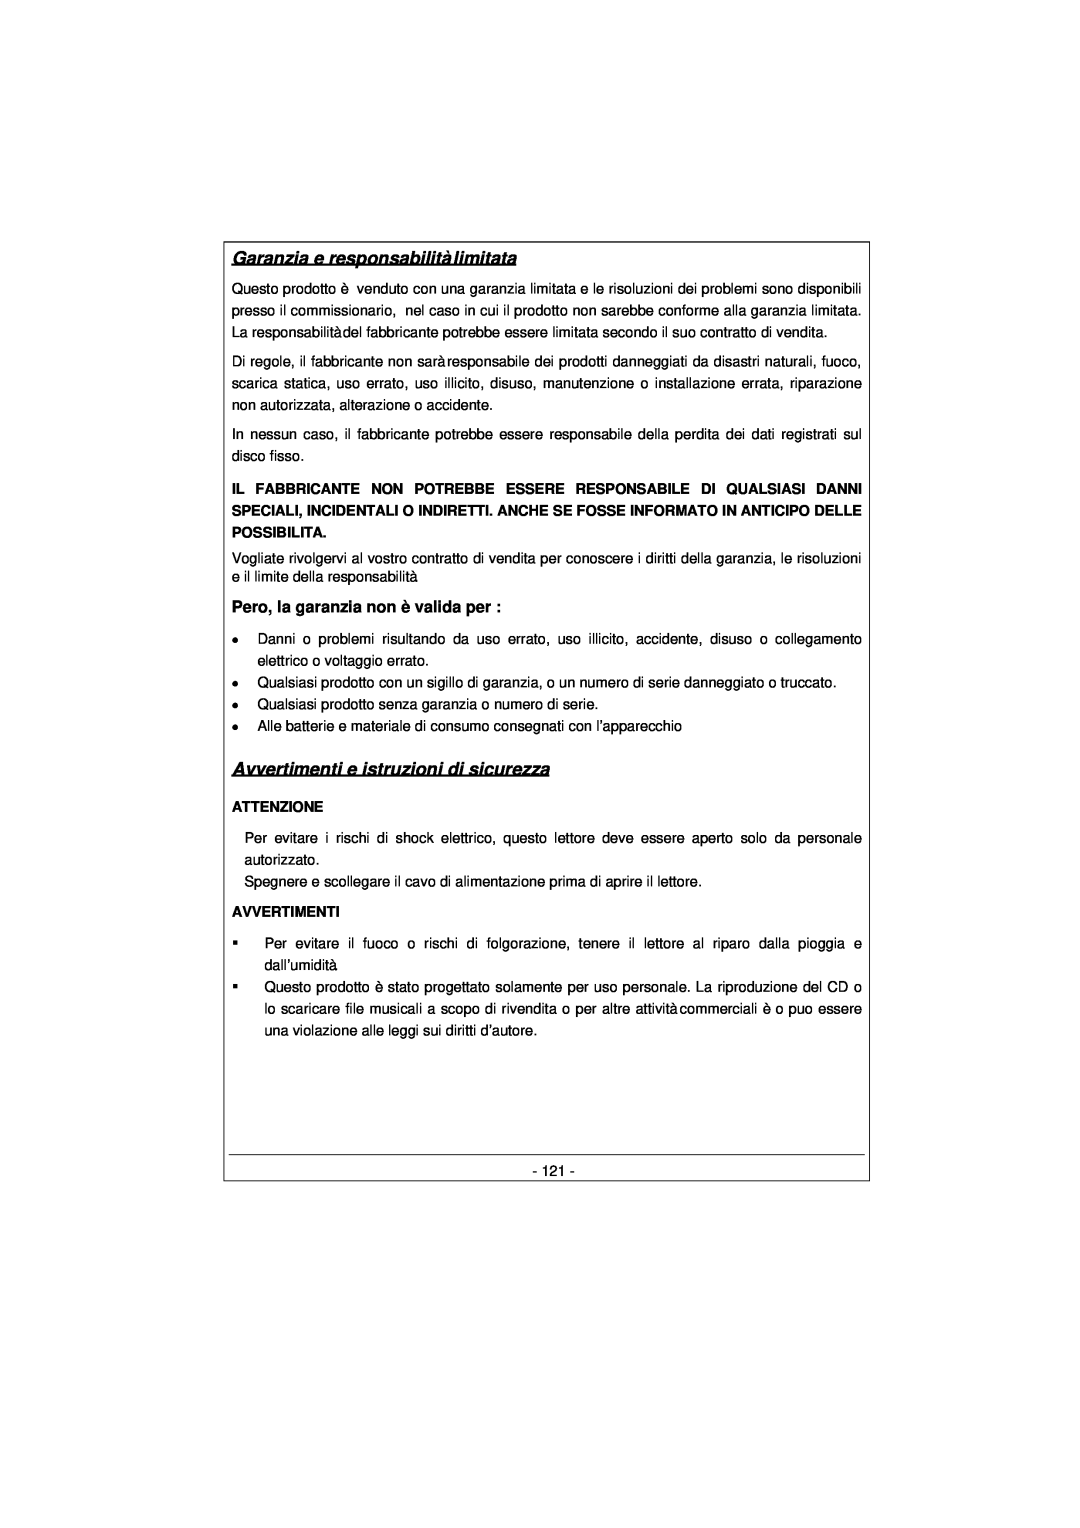 Archos 100628 manual Garanzia e responsabilità limitata, Avvertimenti e istruzioni di sicurezza 